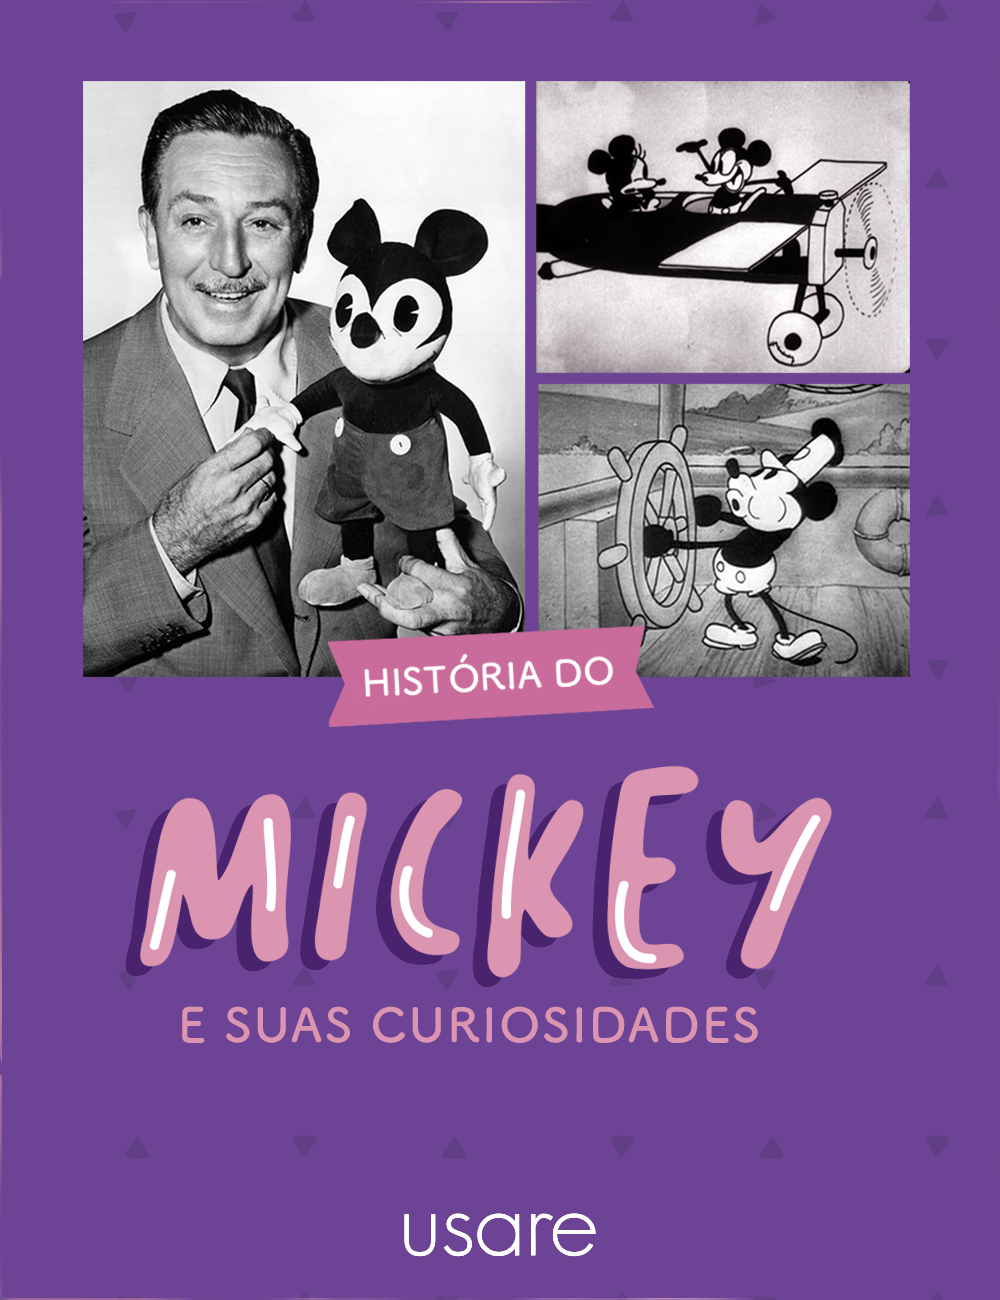 Curiosidades sobre o Mickey